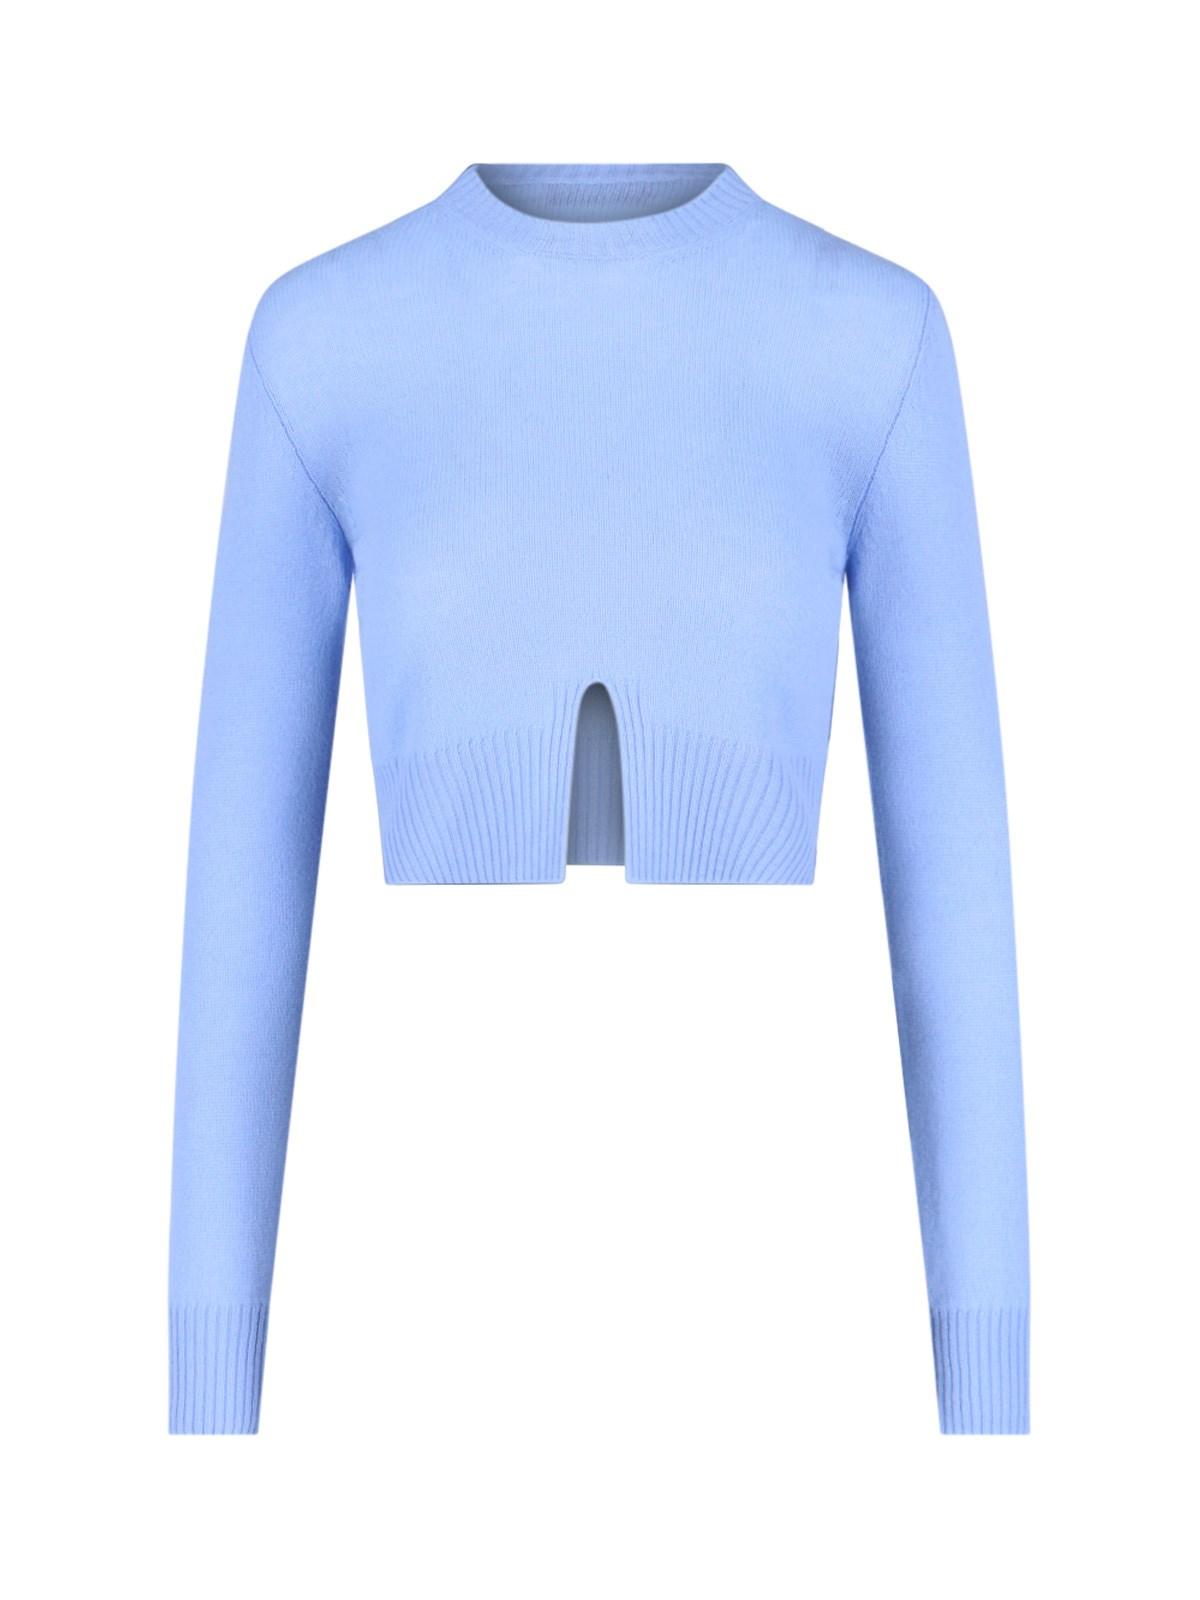 Miu Miu Retro Logo Cropped Sweater in Blue | Lyst